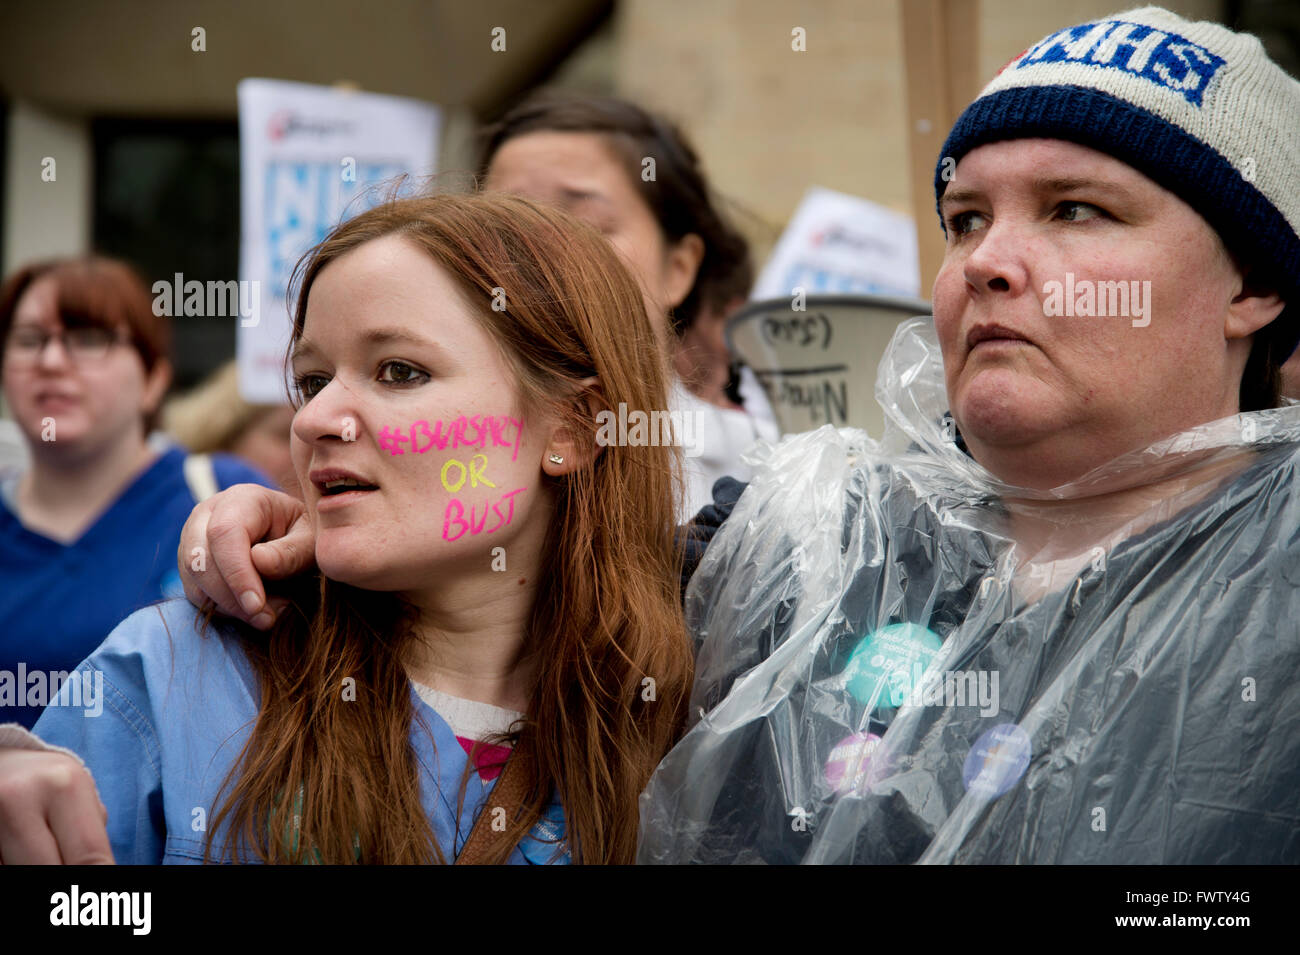 48-Stunden-Streik der Junior Ärzte über Änderungen auf ihren Vertrag mit der NHS. Ein Student hat Stipendium oder Büste im Gesicht geschrieben Stockfoto